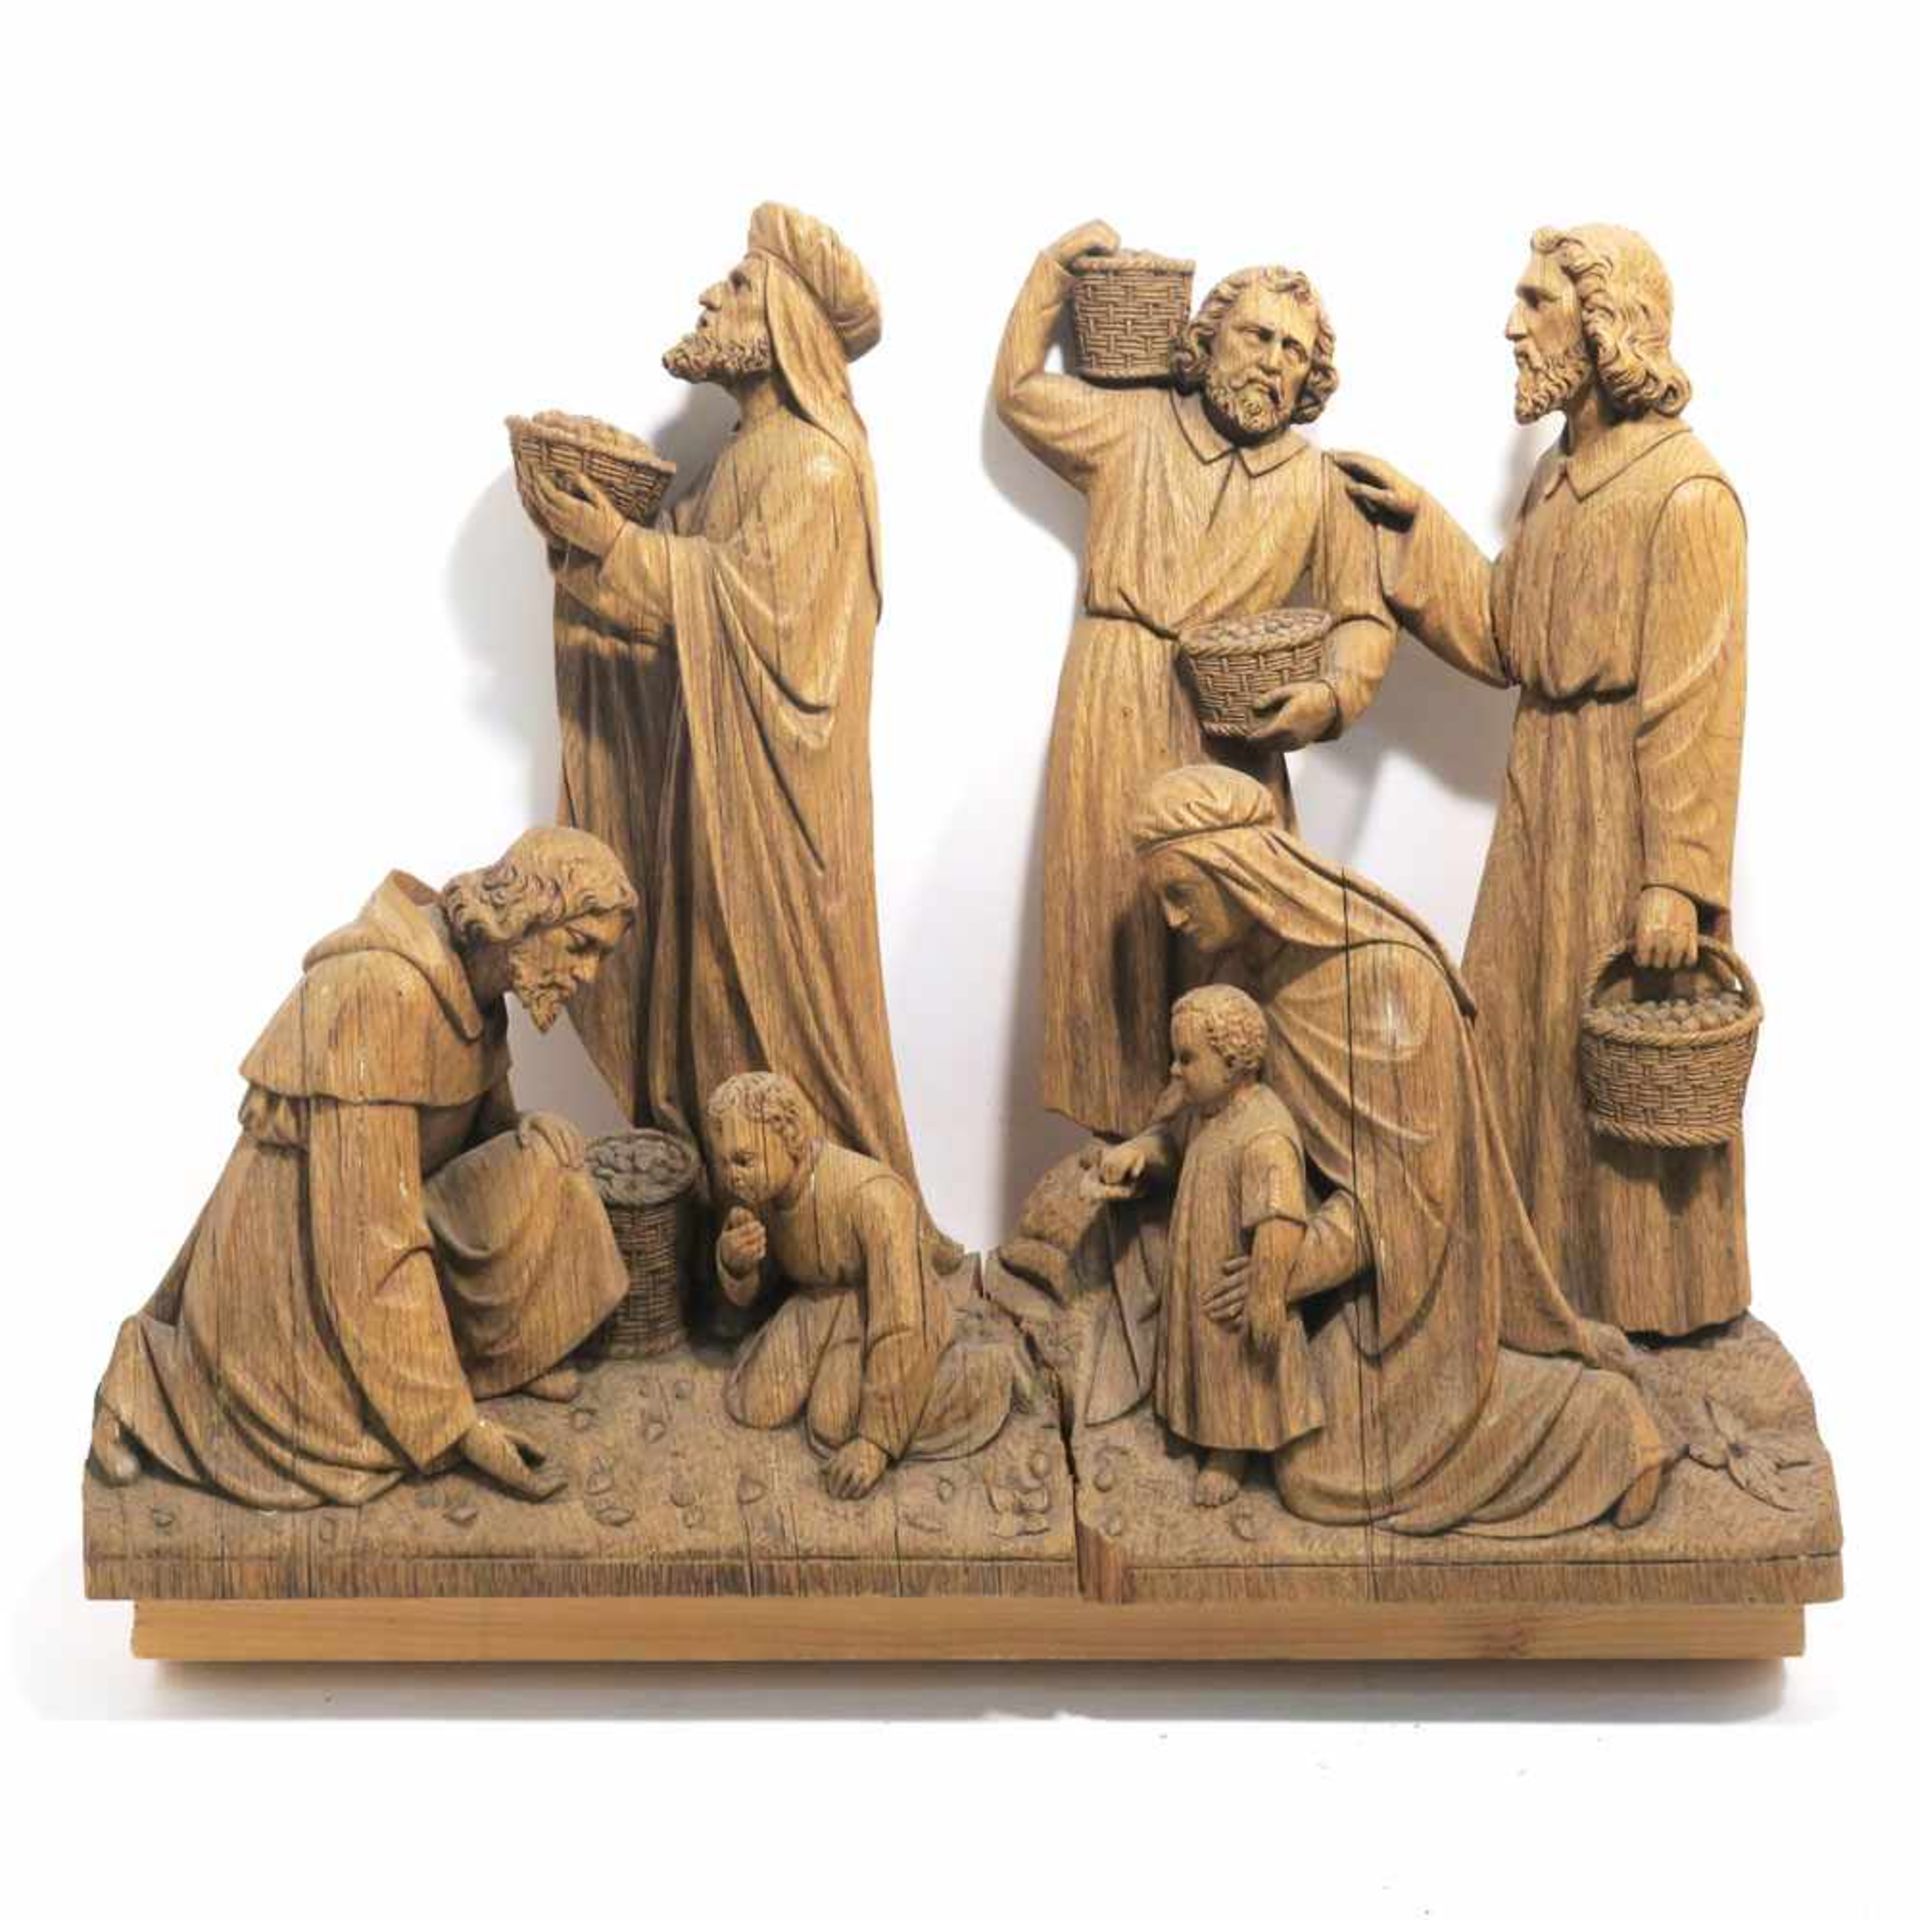 zurÃ¼ckgezogen / withdrawn---Relief: Mannalese Eiche, geschnitzt, ungefasst. Besch. 48,5 x 59 x 9